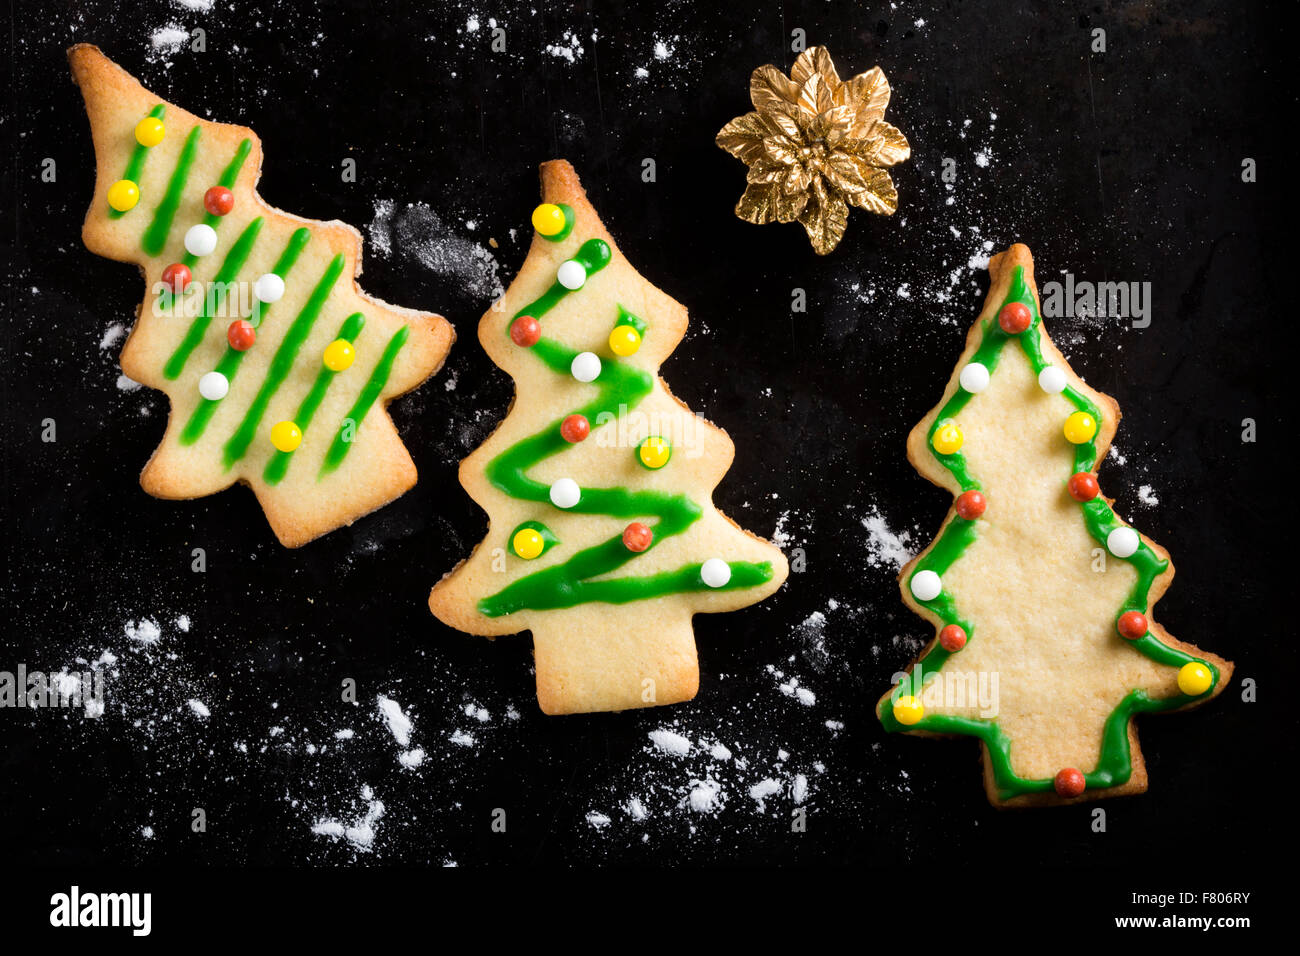 Pan di zenzero biscotti di Natale su sfondo scuro Foto Stock